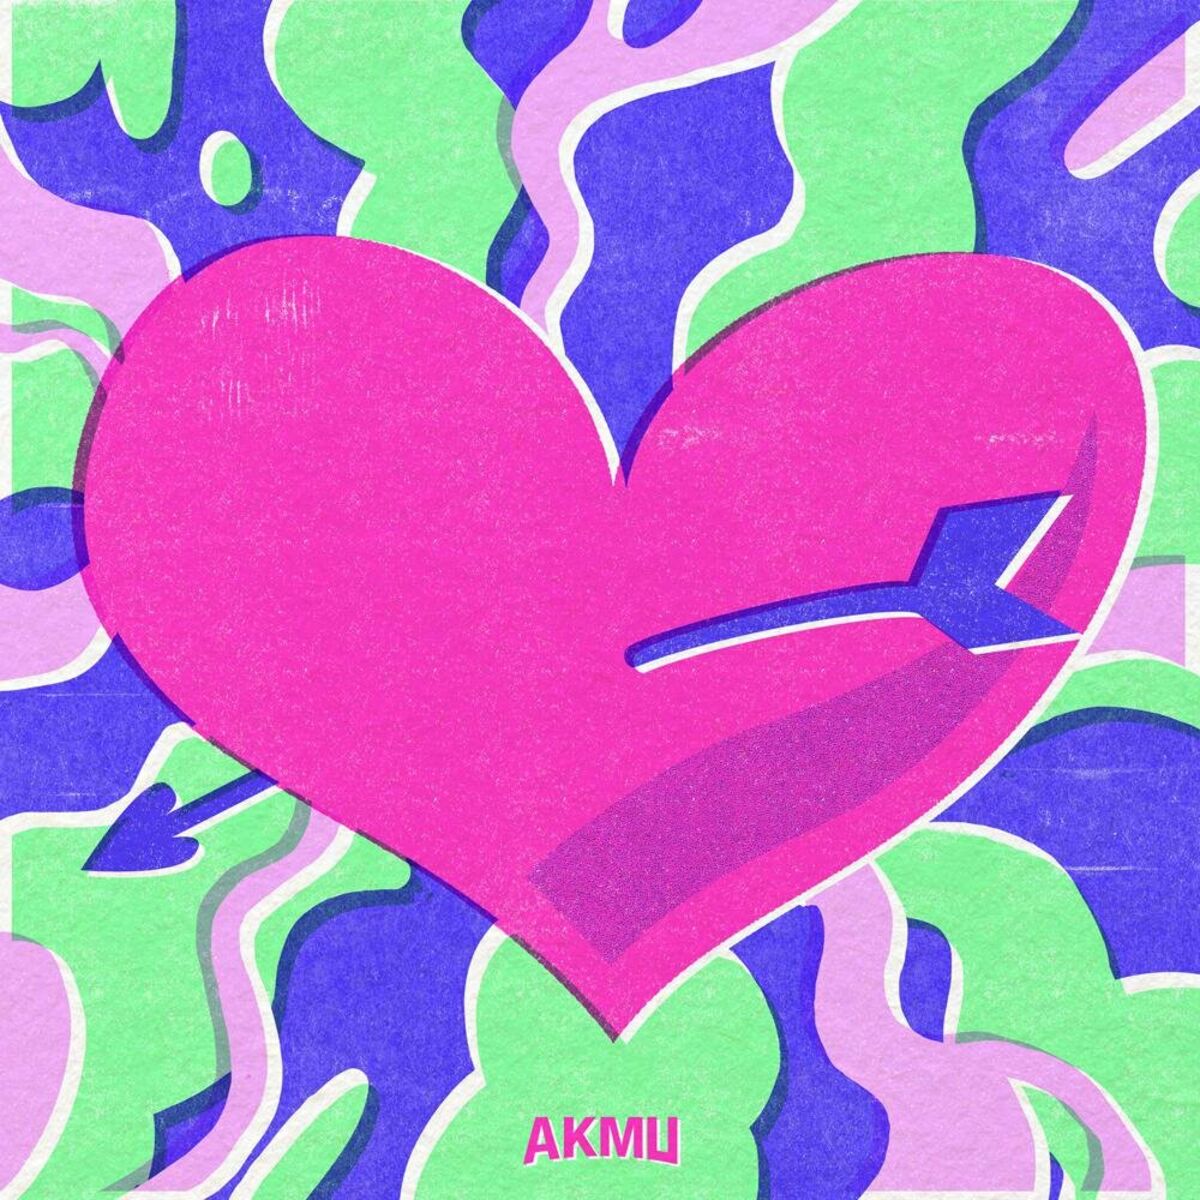 AKMU – Love Lee – Single